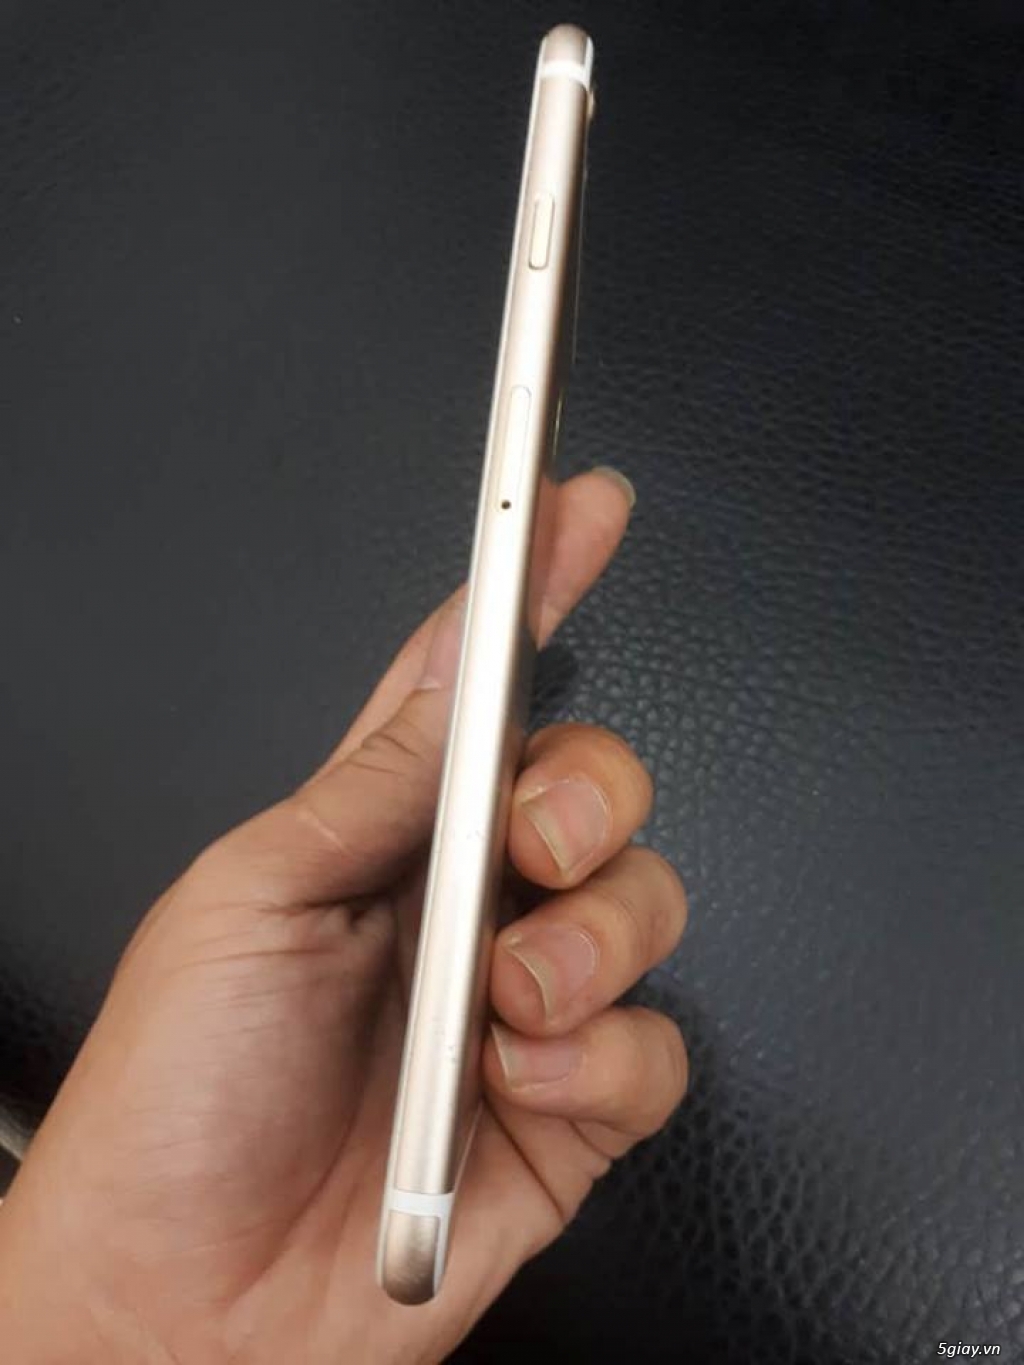 Apple iPhone 6S Plus 16Gb Rose Gold - 2